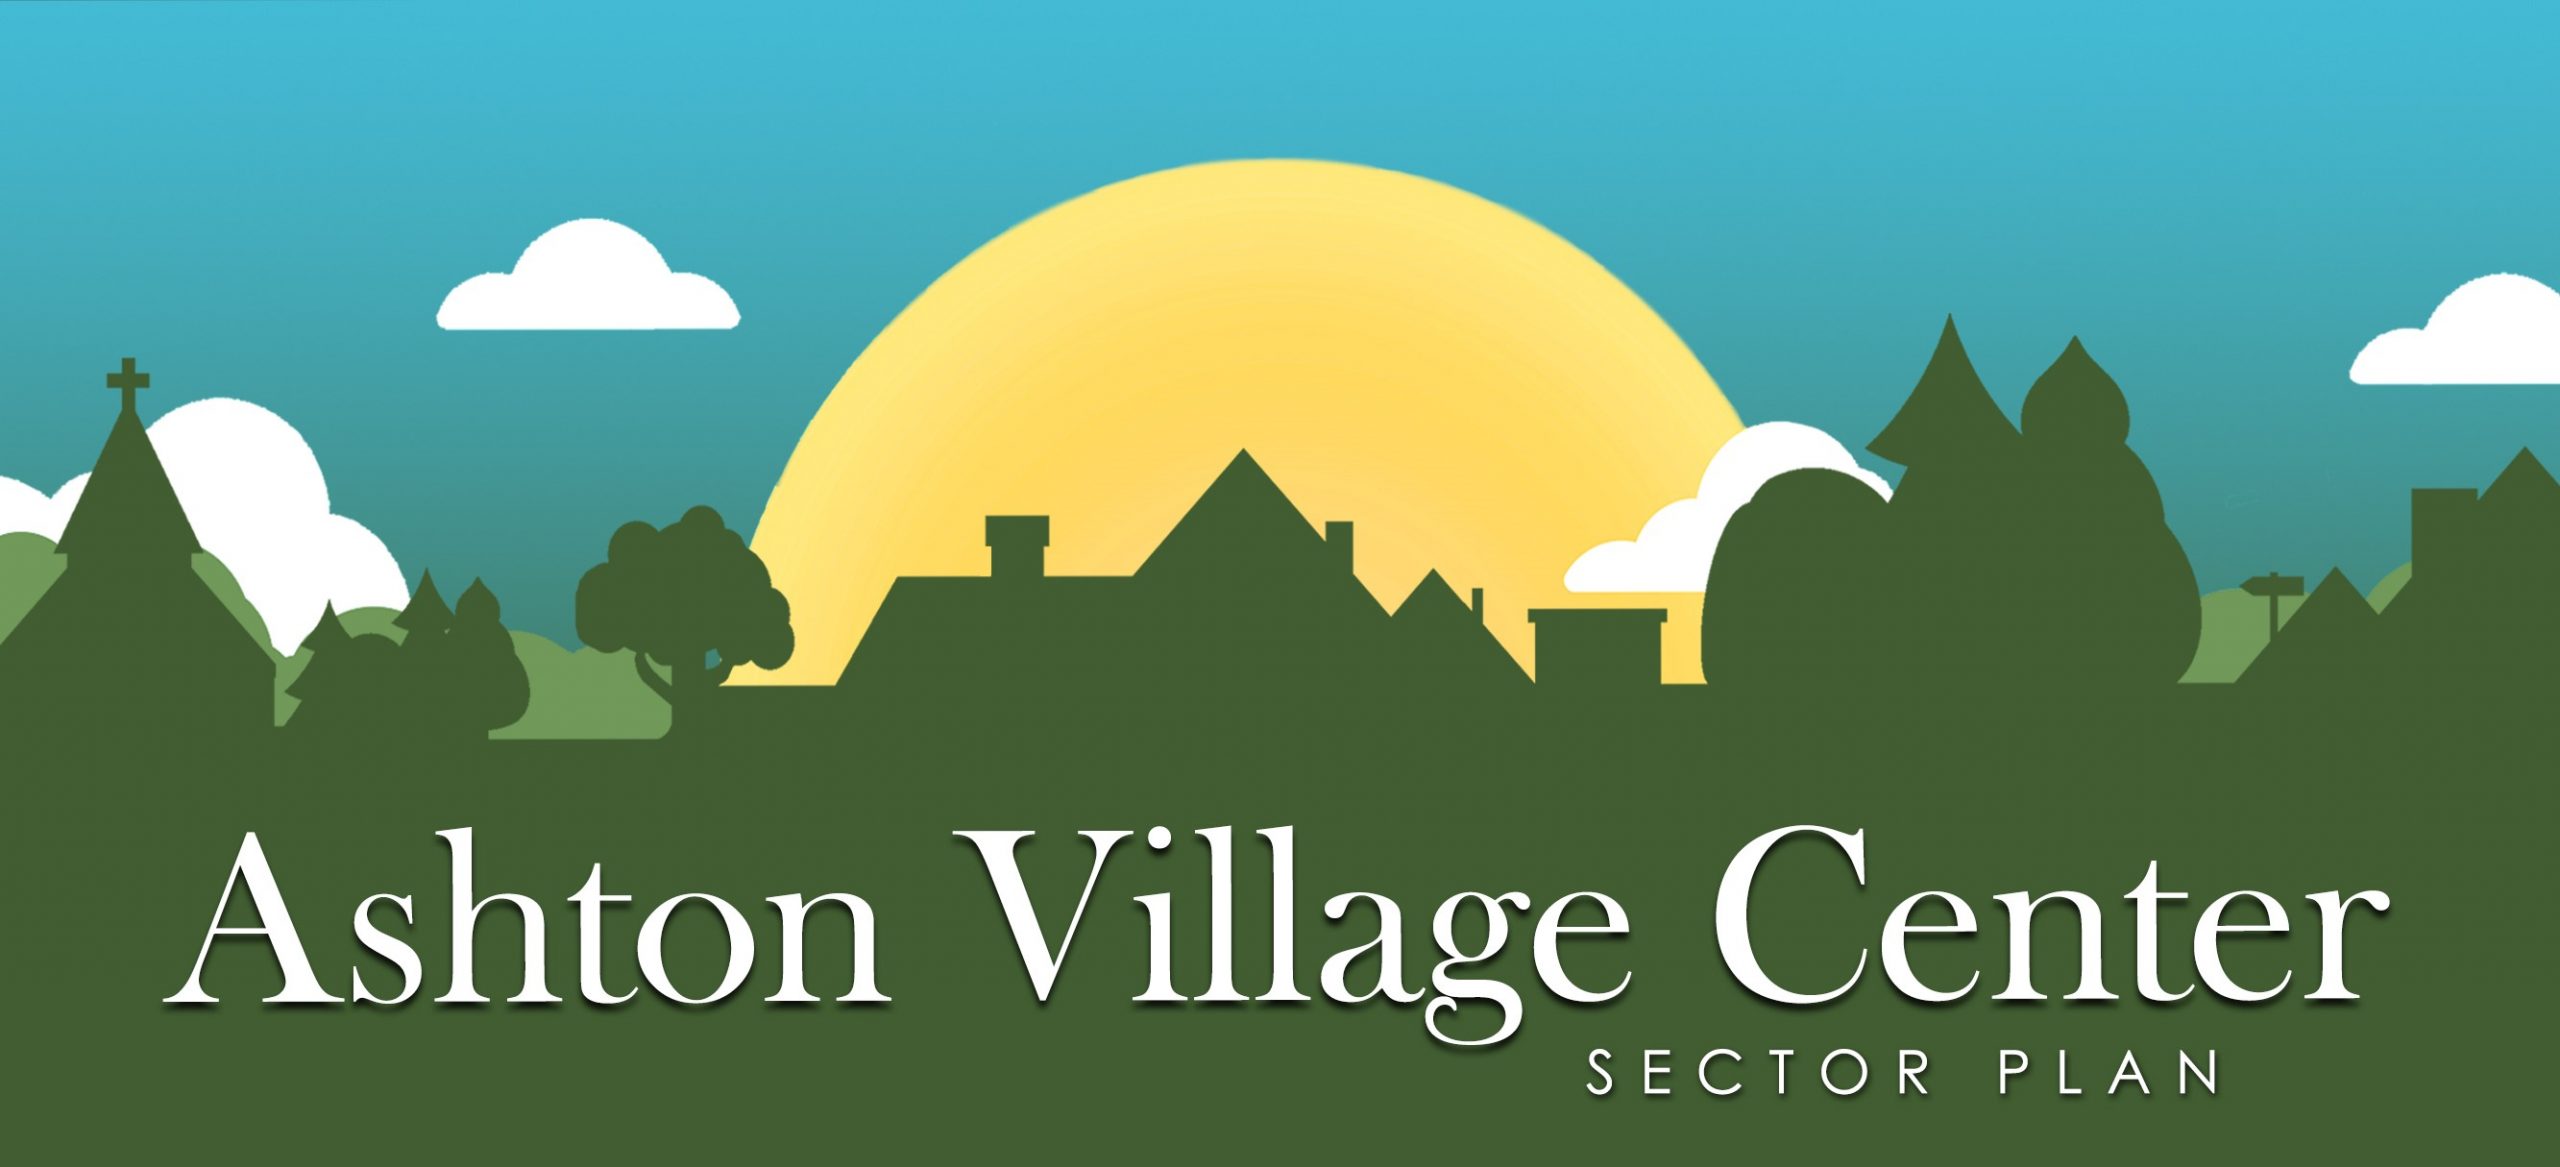 Ashton Village Center Sector Plan Logo